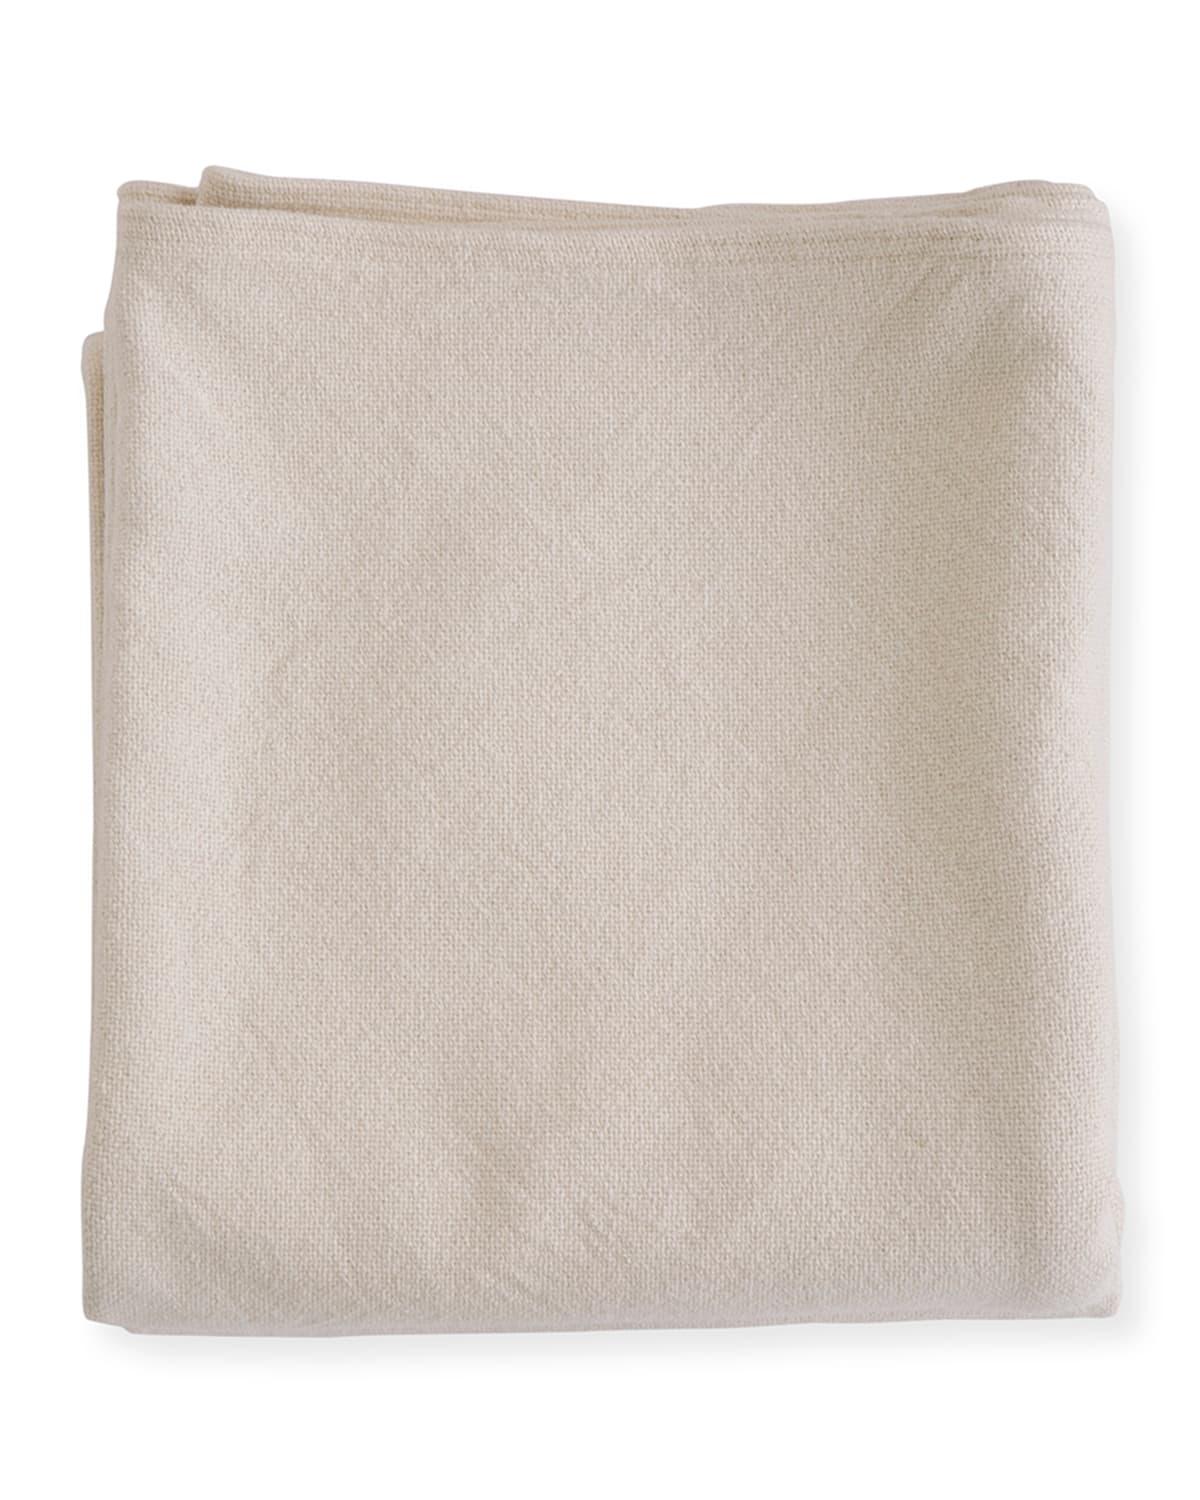 Evangeline Linens Simple Herringbone Cotton Twin Blanket, Natural In Neutral